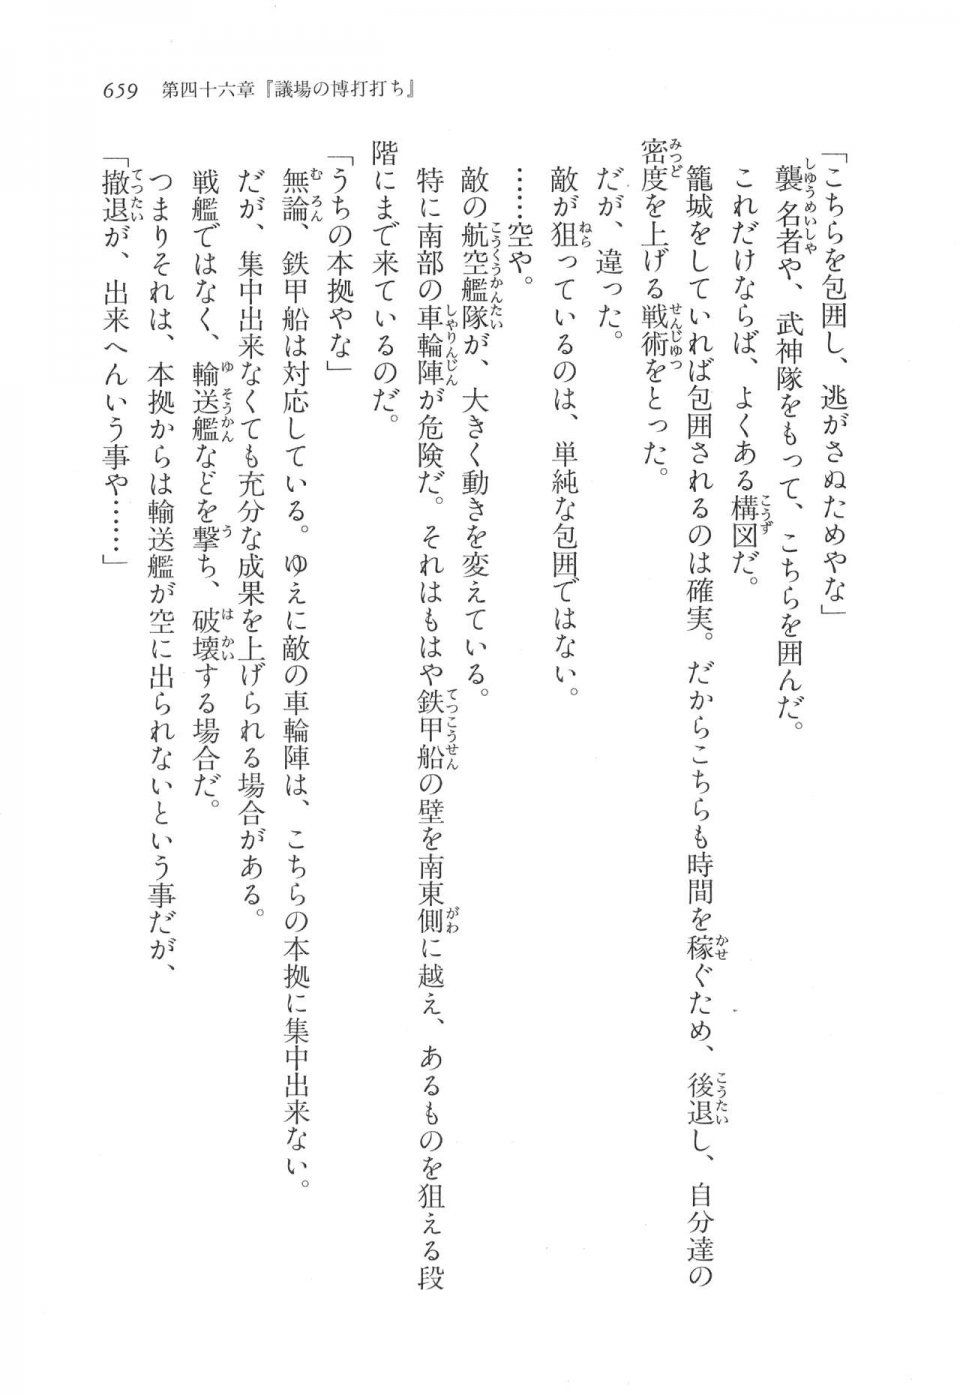 Kyoukai Senjou no Horizon LN Vol 17(7B) - Photo #661